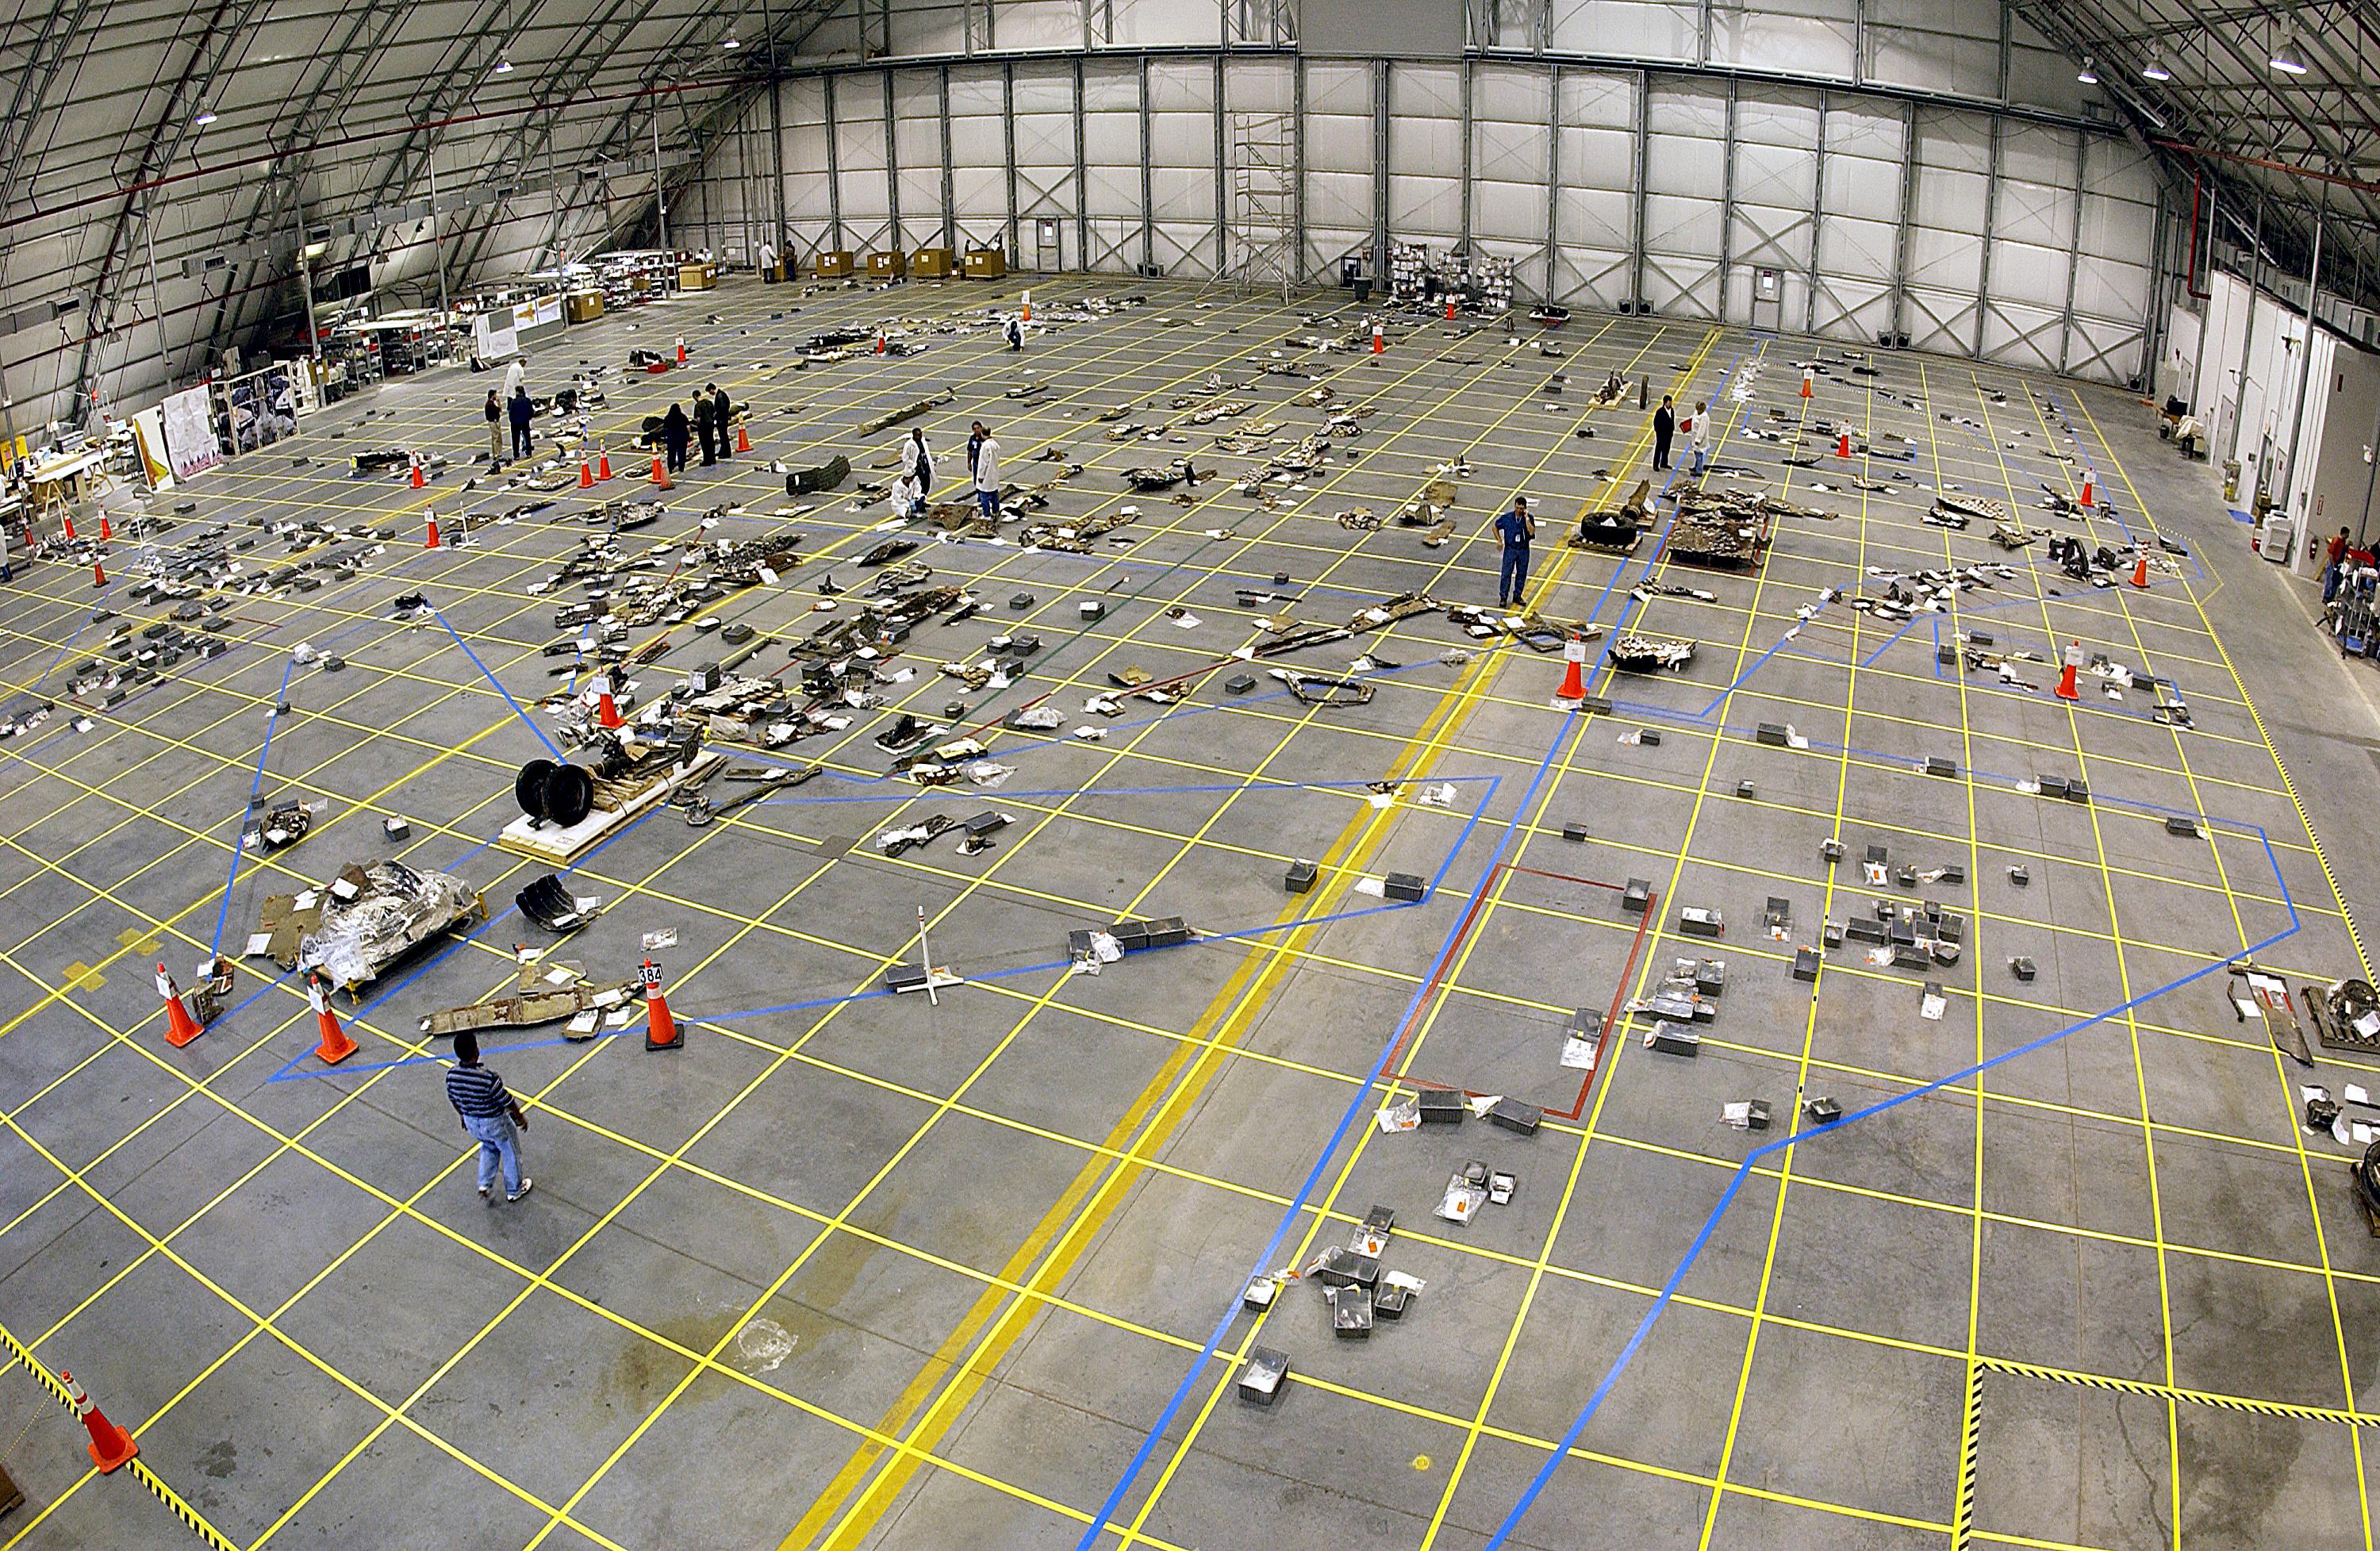 Umiestňovanie trosiek raketoplánu na vyznačené pozície na veľkom nákrese na podlahe hangáru. Na tomto obrázku je to umiestňovanie trosiek Columbie, ktorá havarovala vo februári 2003. Zdroj.